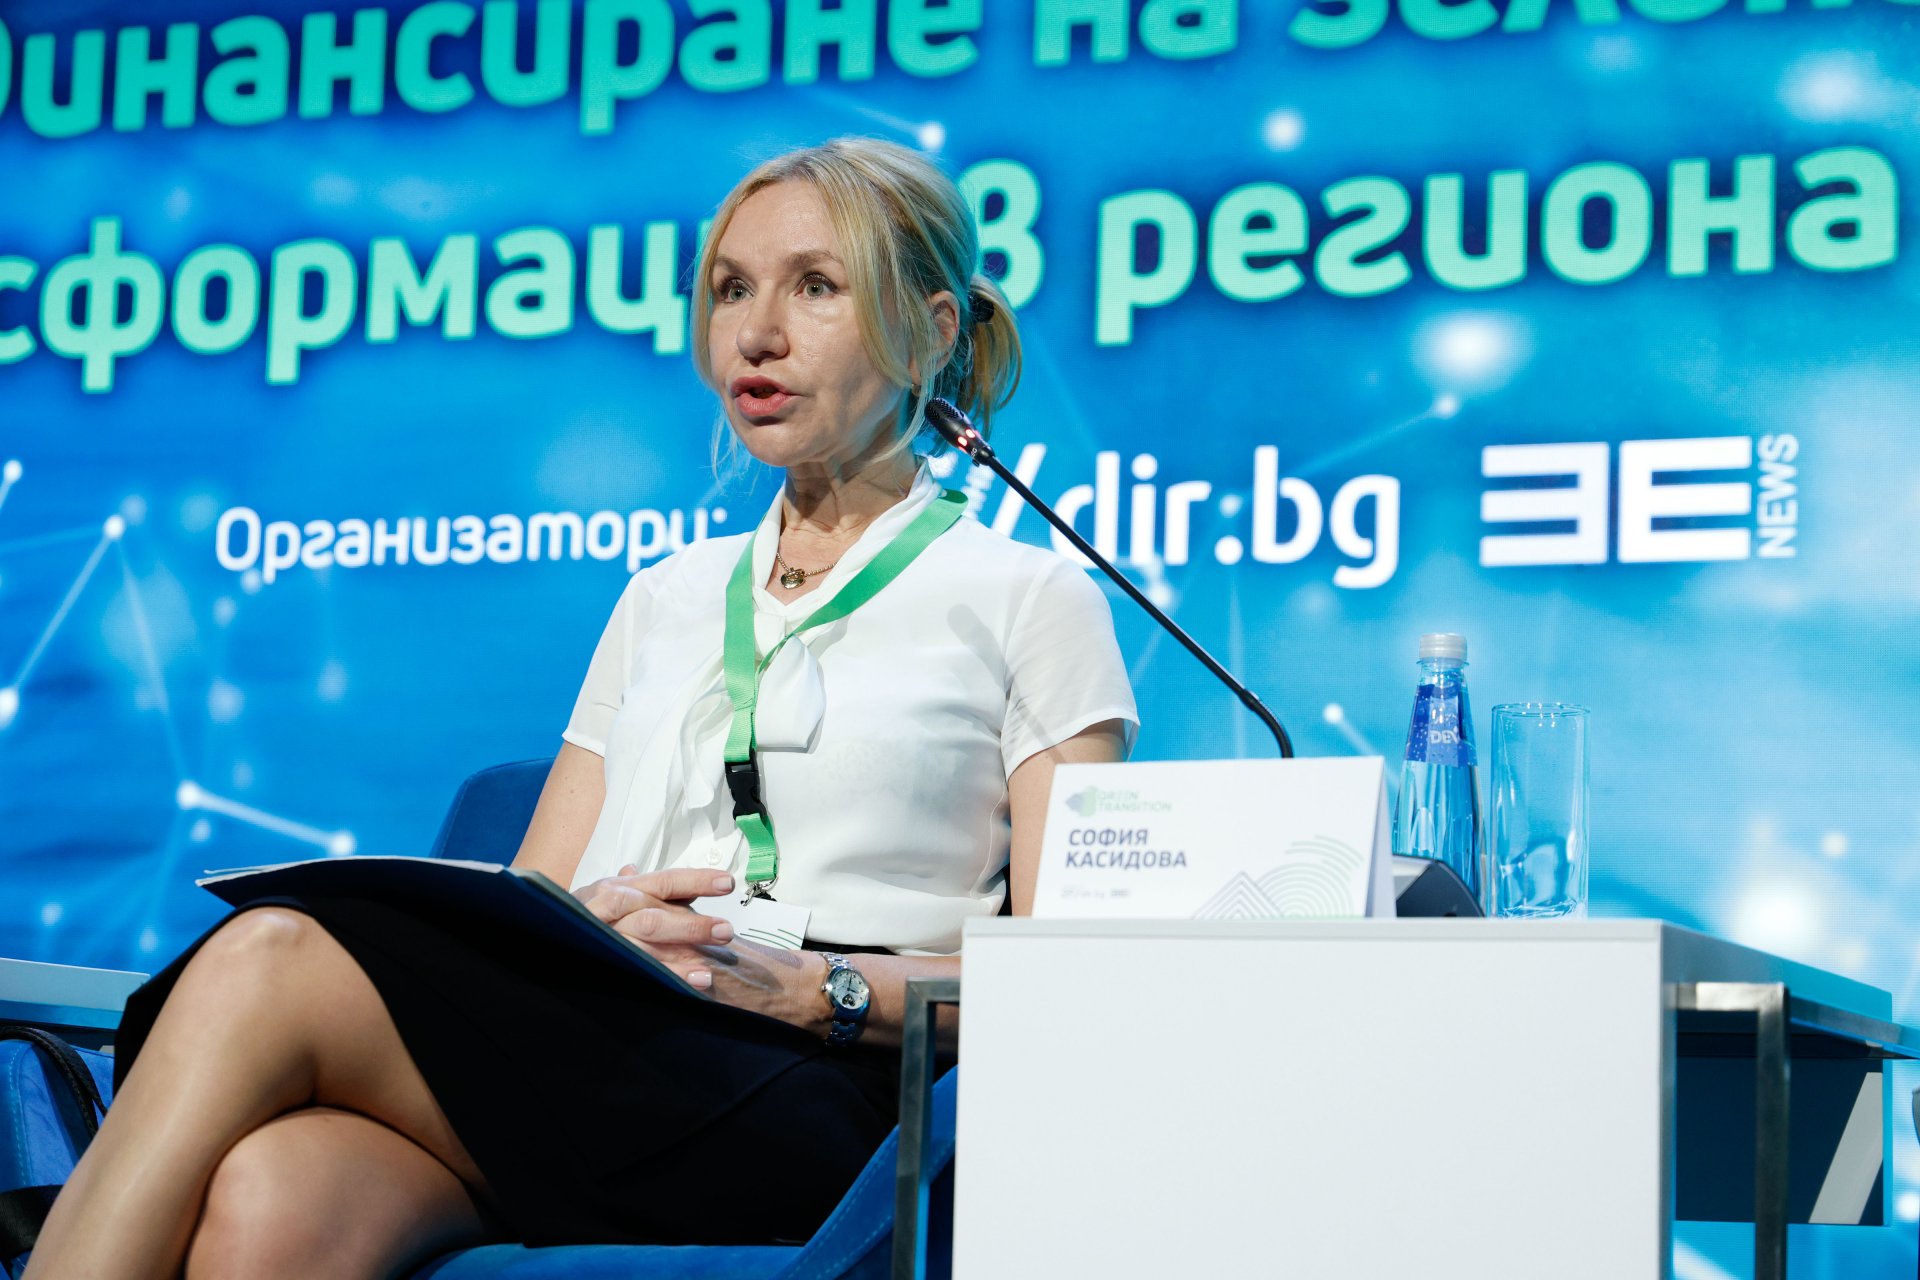 София Касидова, ръководител екип за стратегическо развитие и зелени политики в ББР, беше модератор на панела 